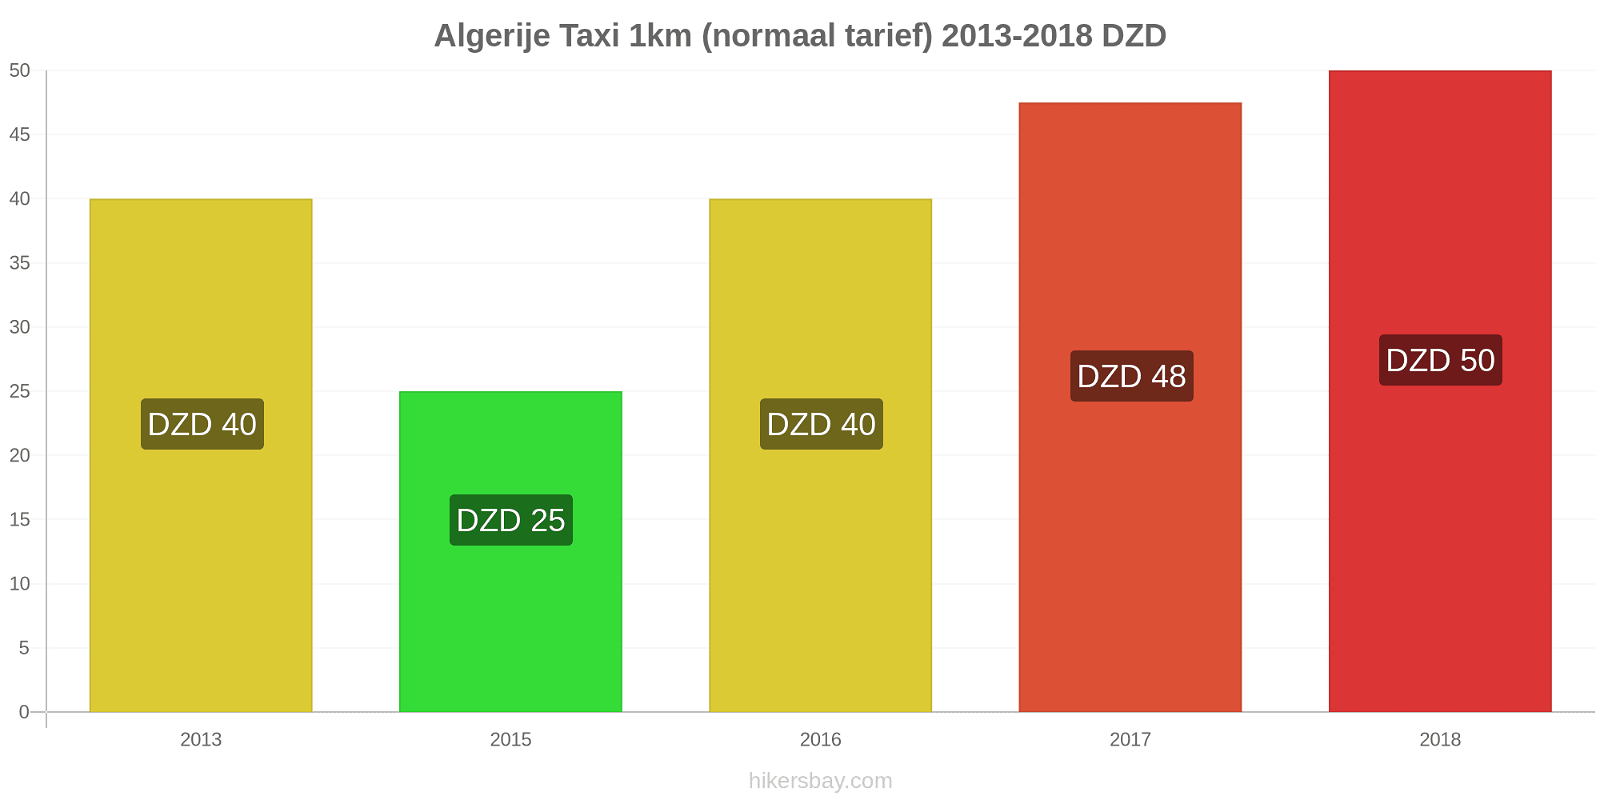 Algerije prijswijzigingen Taxi 1km (normaal tarief) hikersbay.com